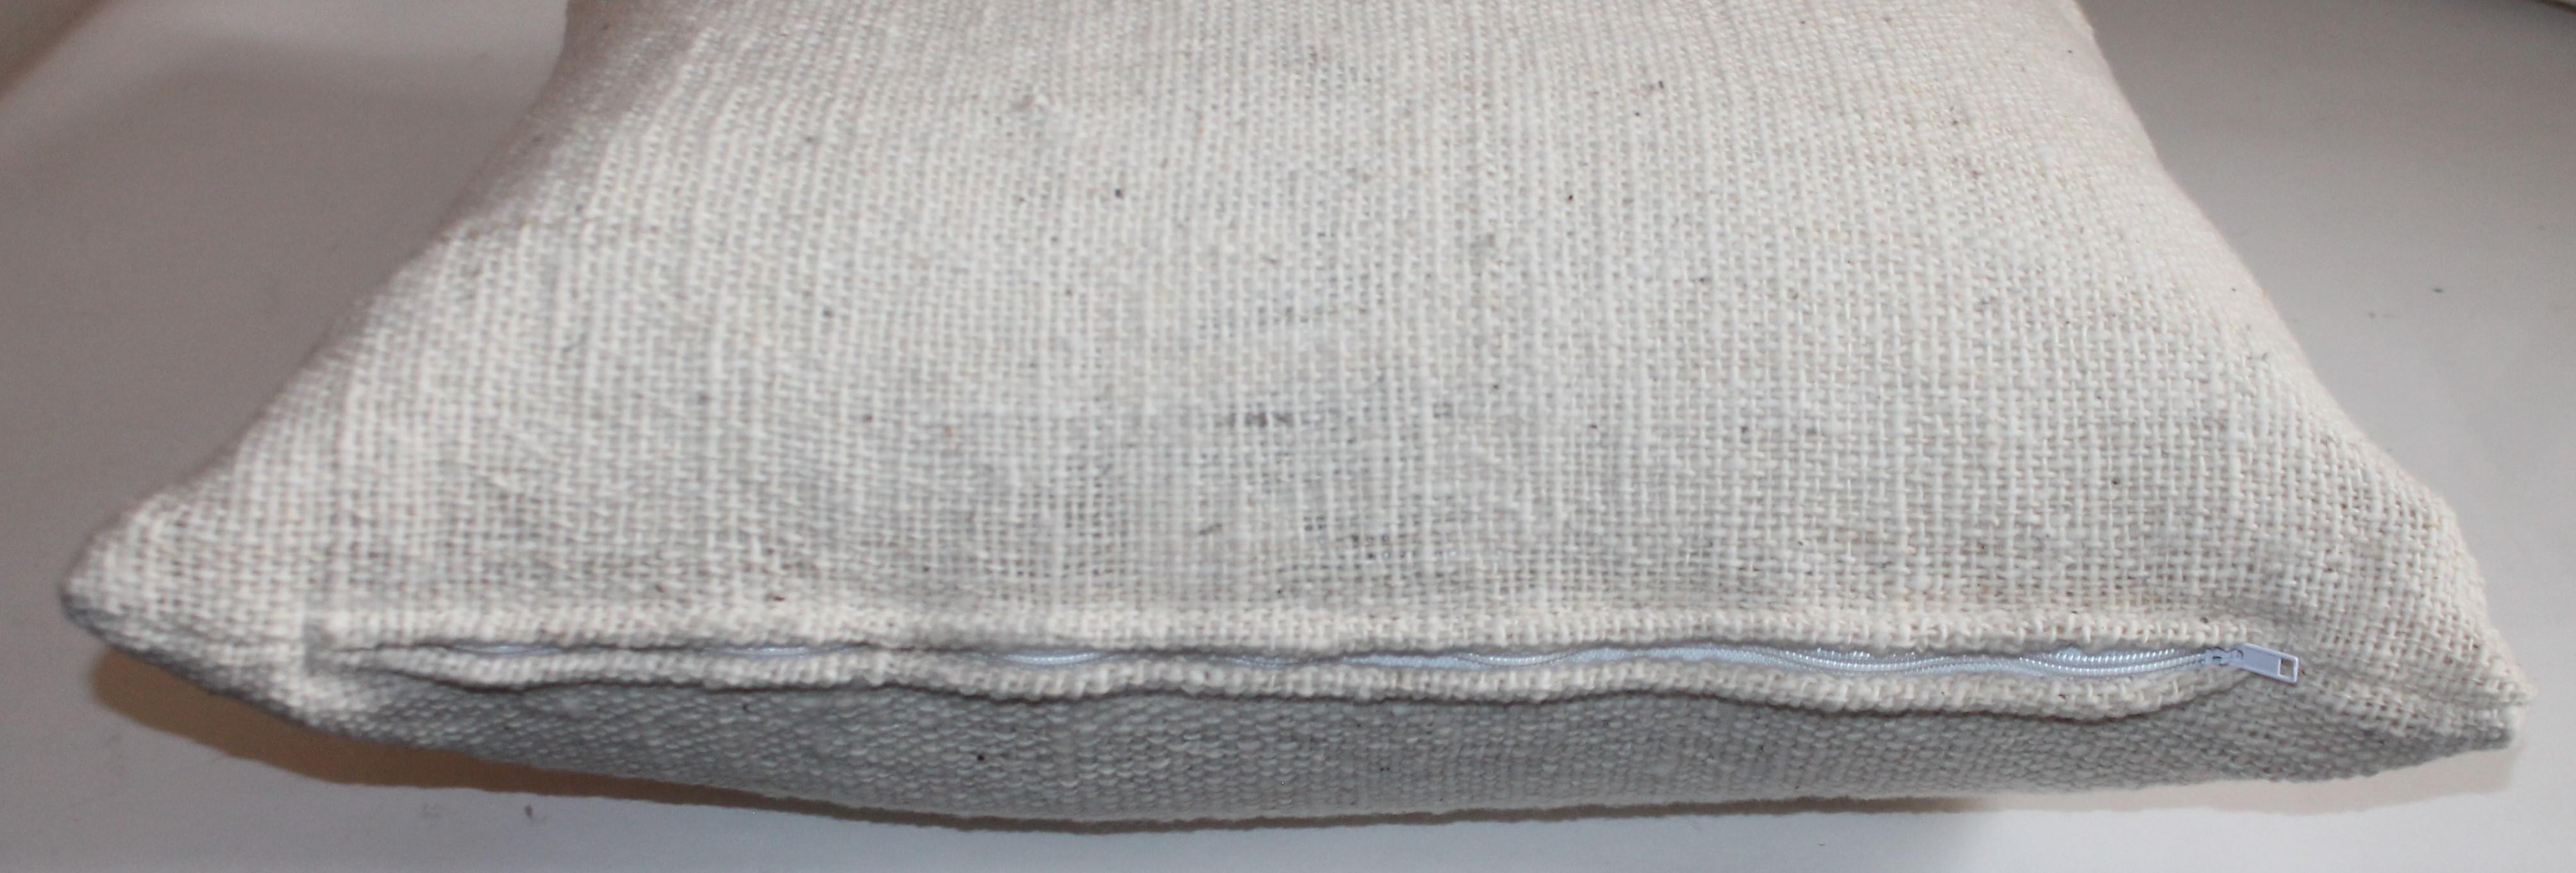 American Reversible Home Spun Linen Pillows, 4 Pillows For Sale